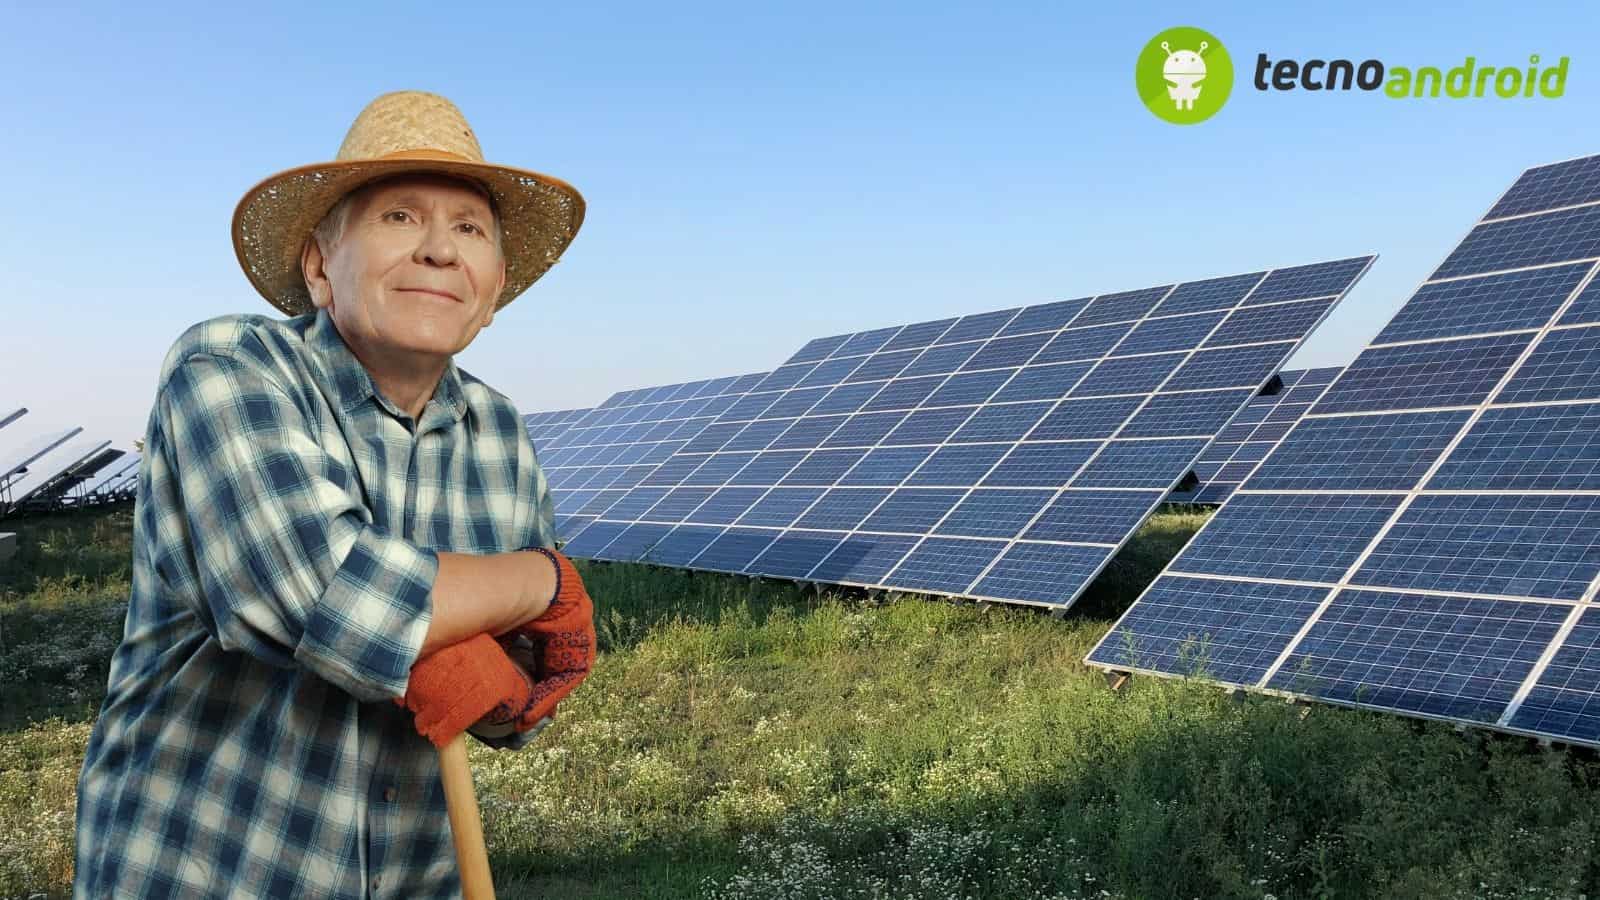 Agrivoltaico: si può coltivare in presenza di pannelli solari?